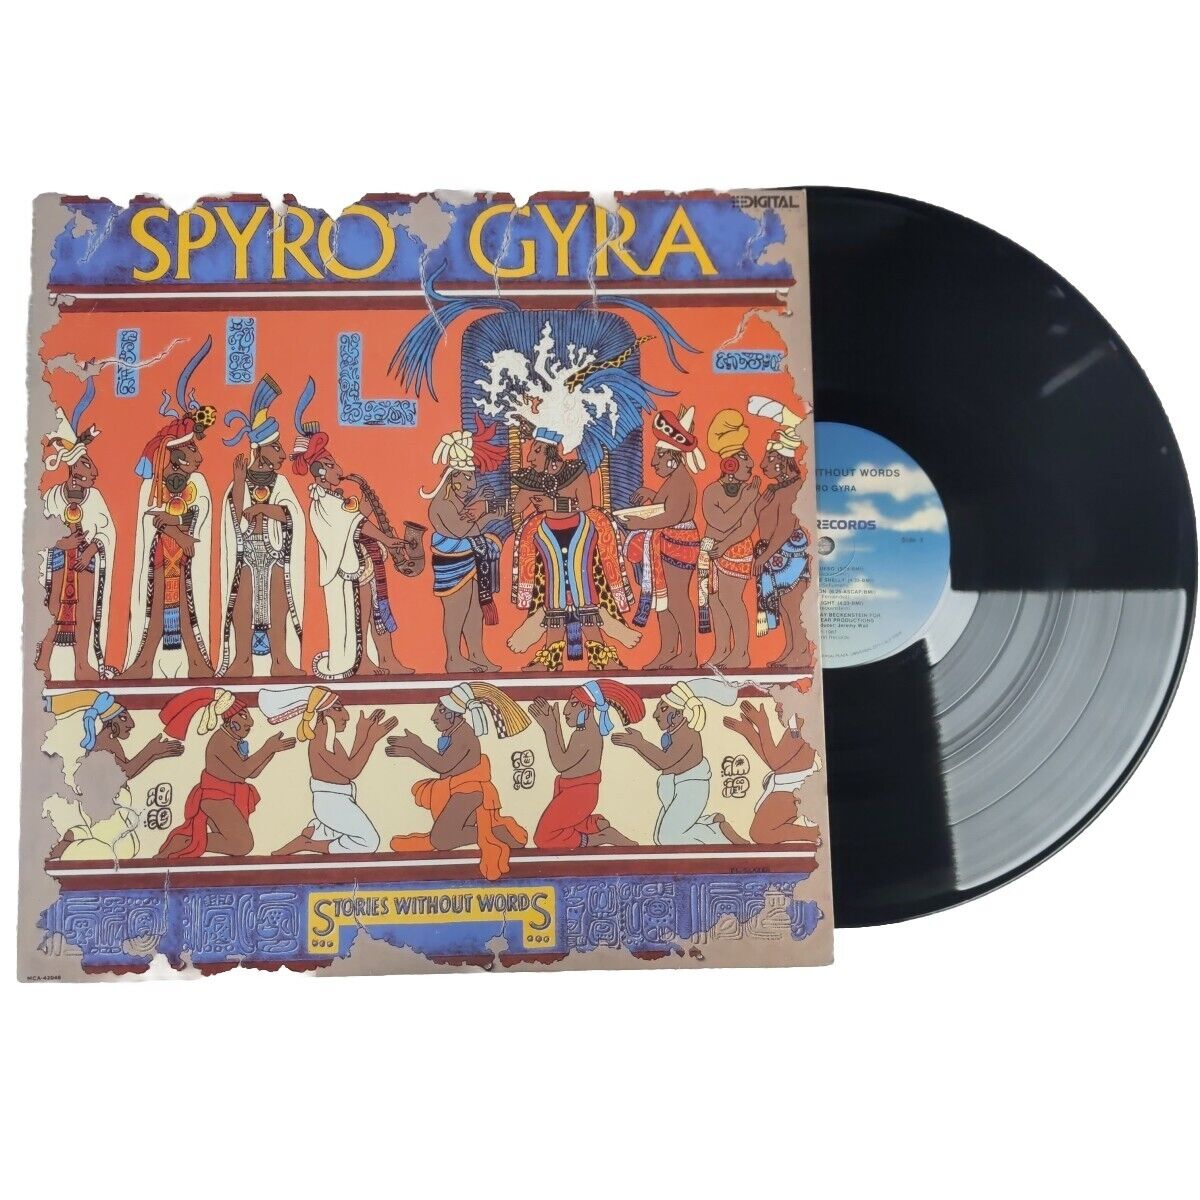 Spyro Gyra - Stories Without Words Vinyl Record Jazz Fusion MCA-42046